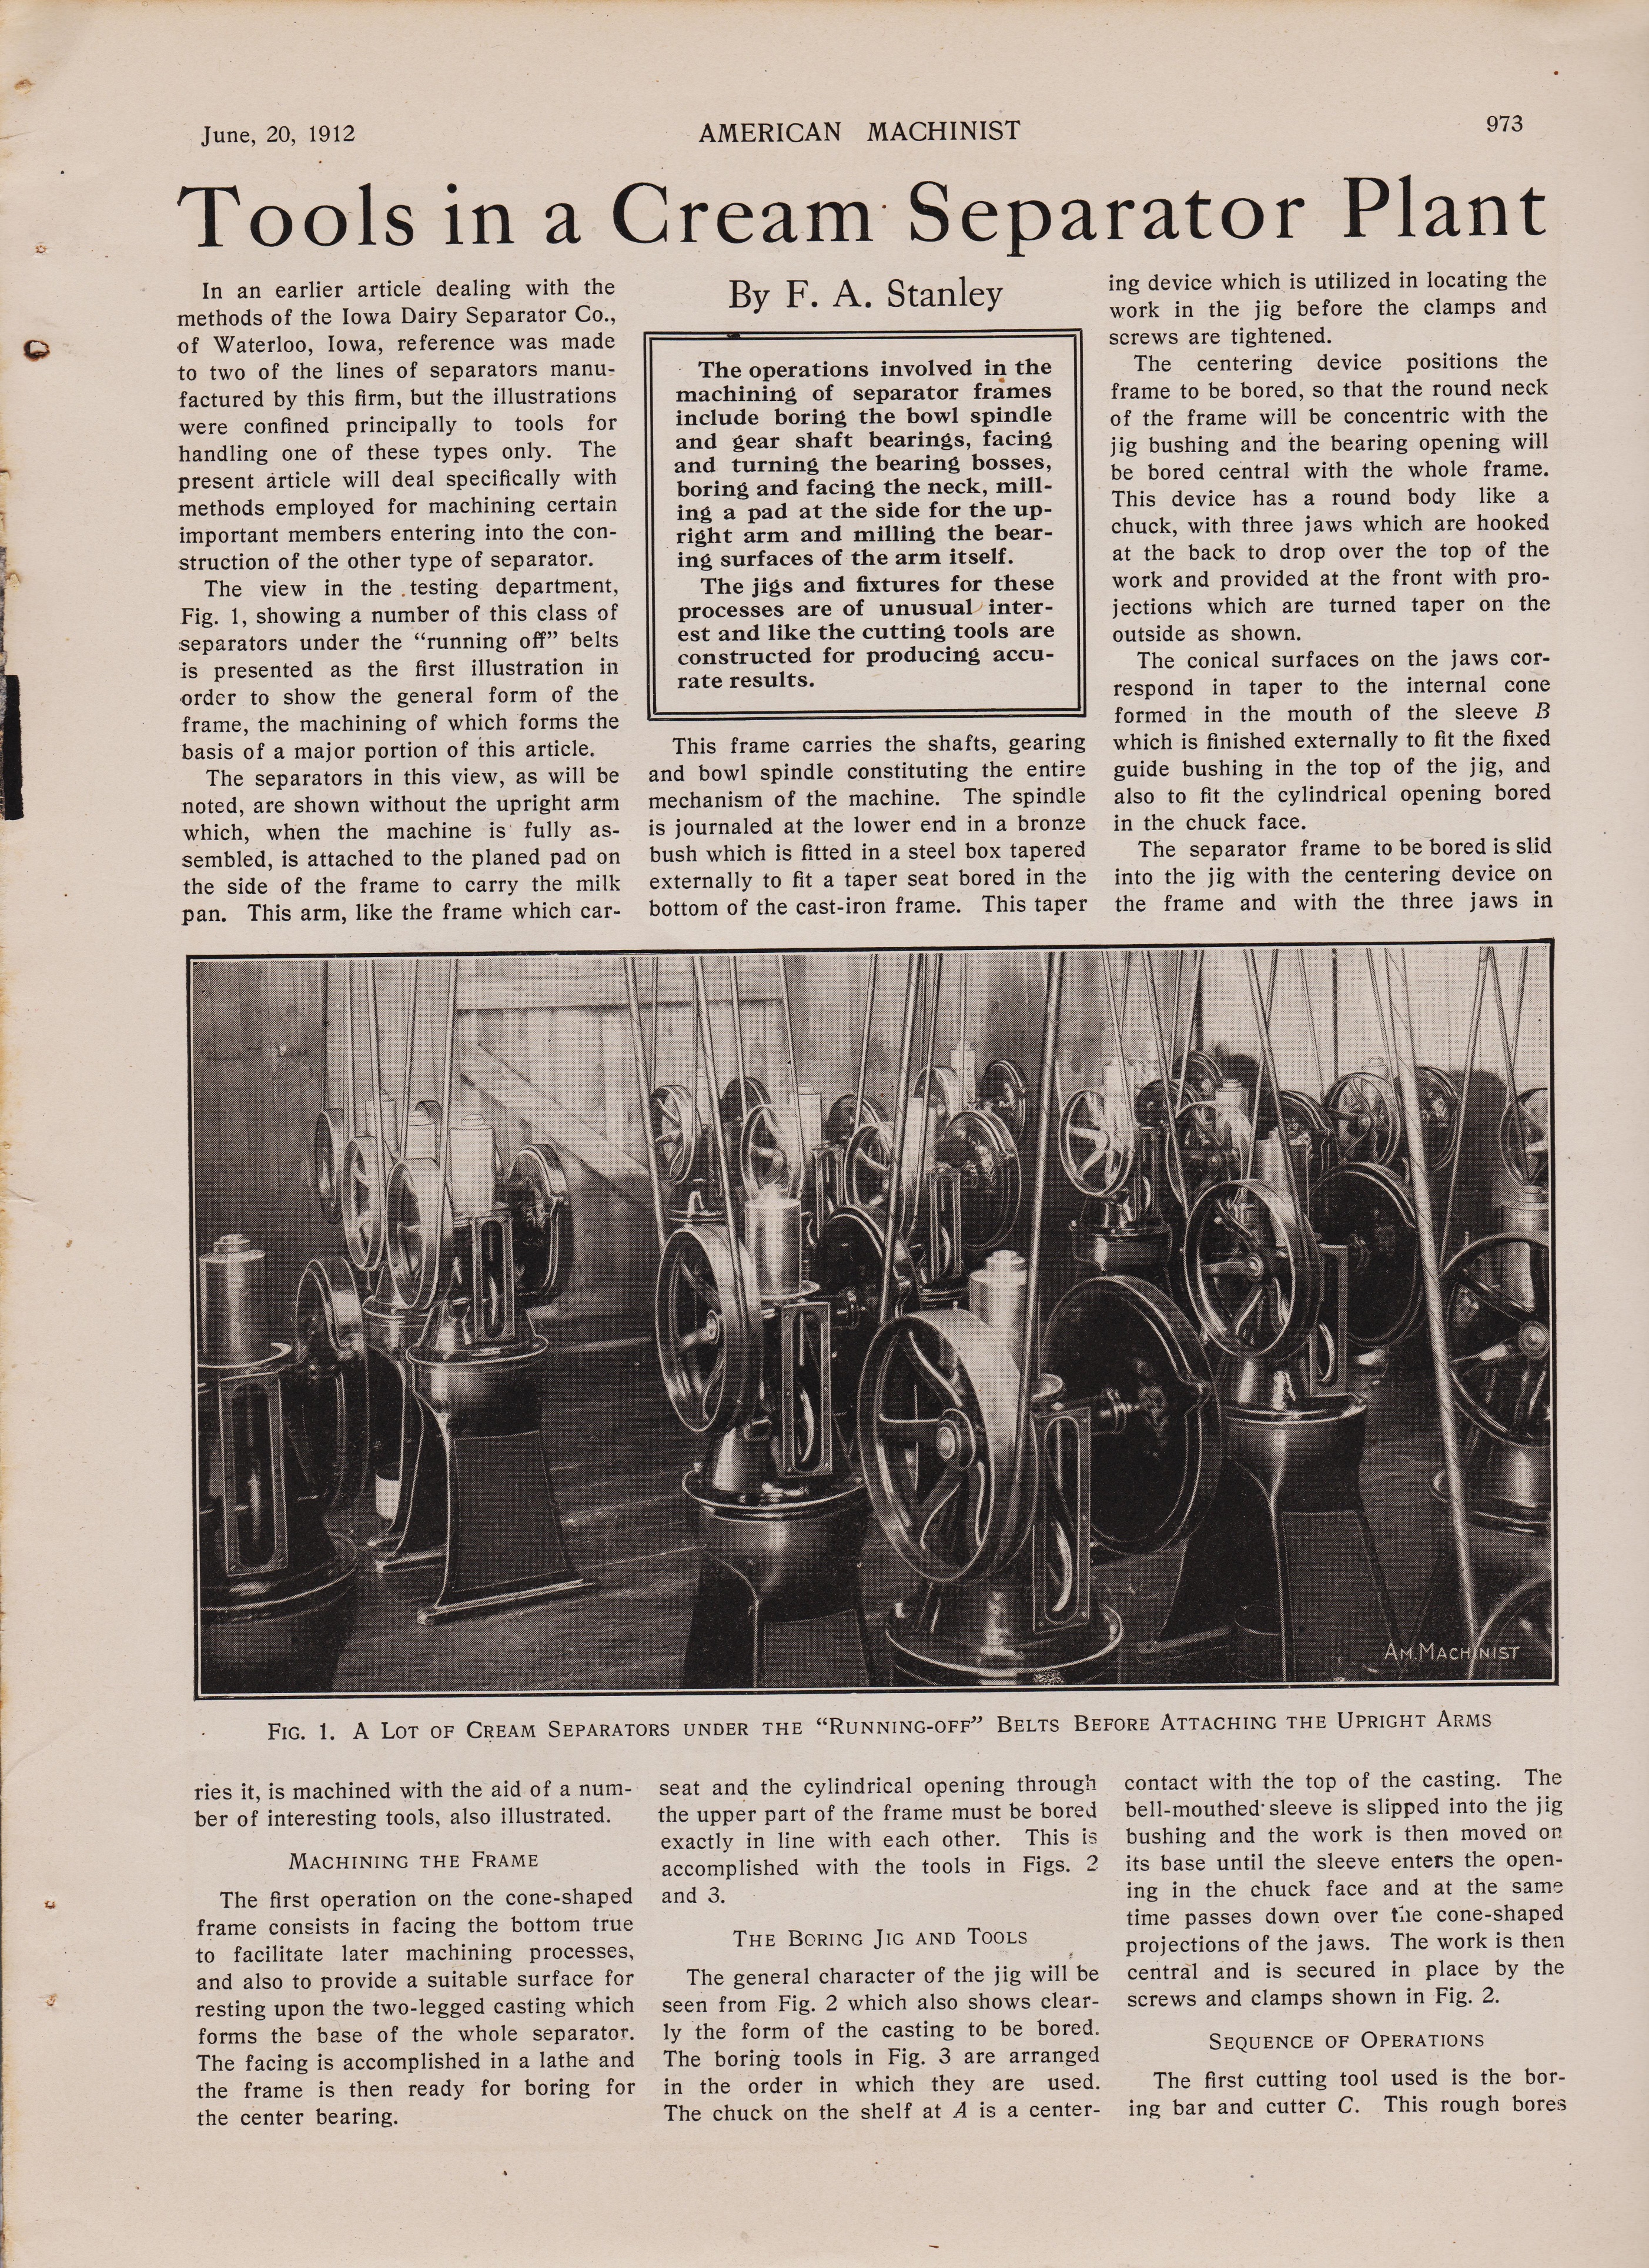 https://antiquemachinery.com/images-Cream-Separator/1912-American-Machinist-Magazine-1912-June-30-pg-973-Cream-Separator-Plant-55per.jpg